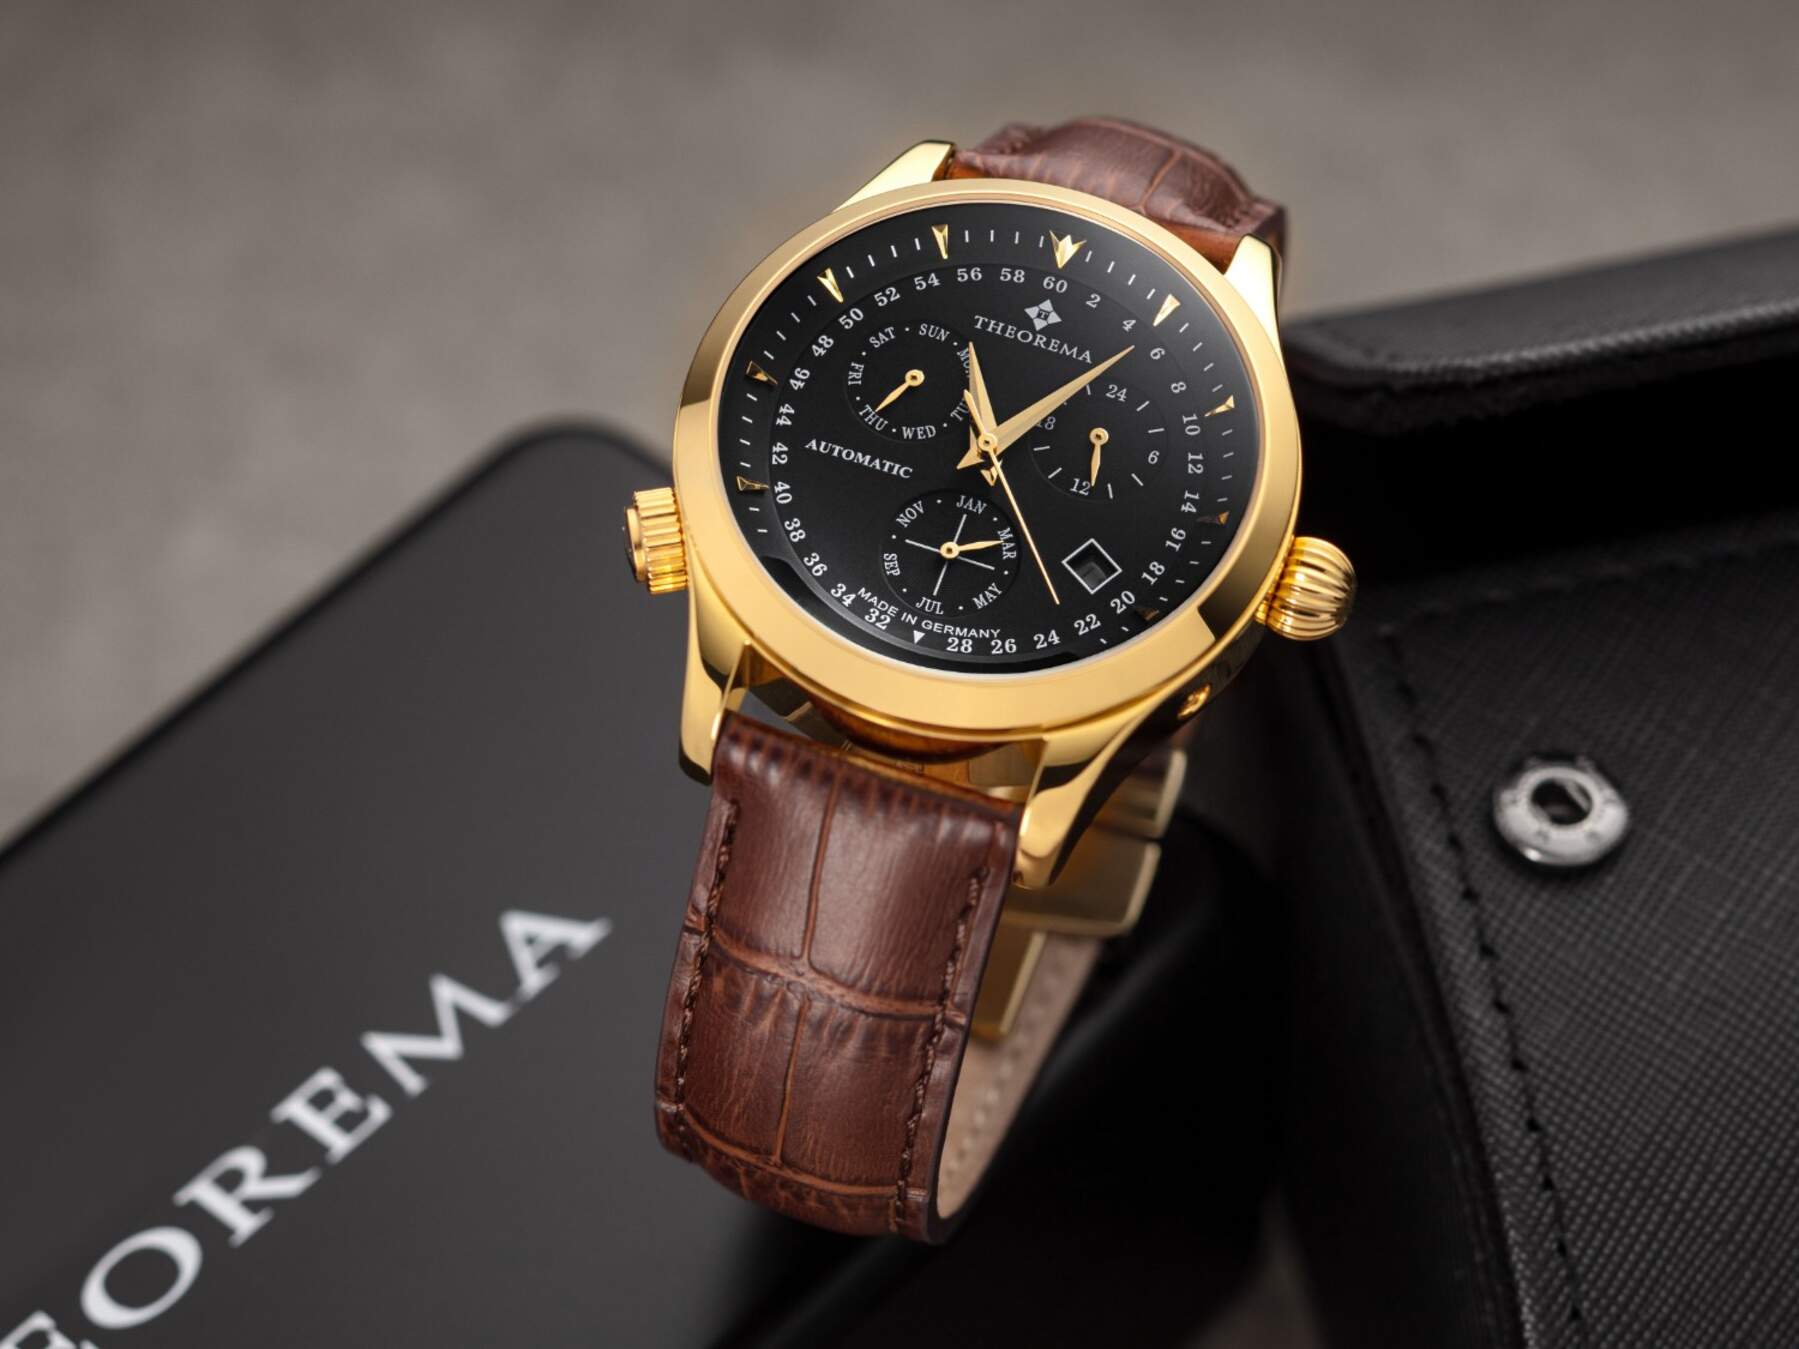 Tufina German Watch brand, best luxury watches for men